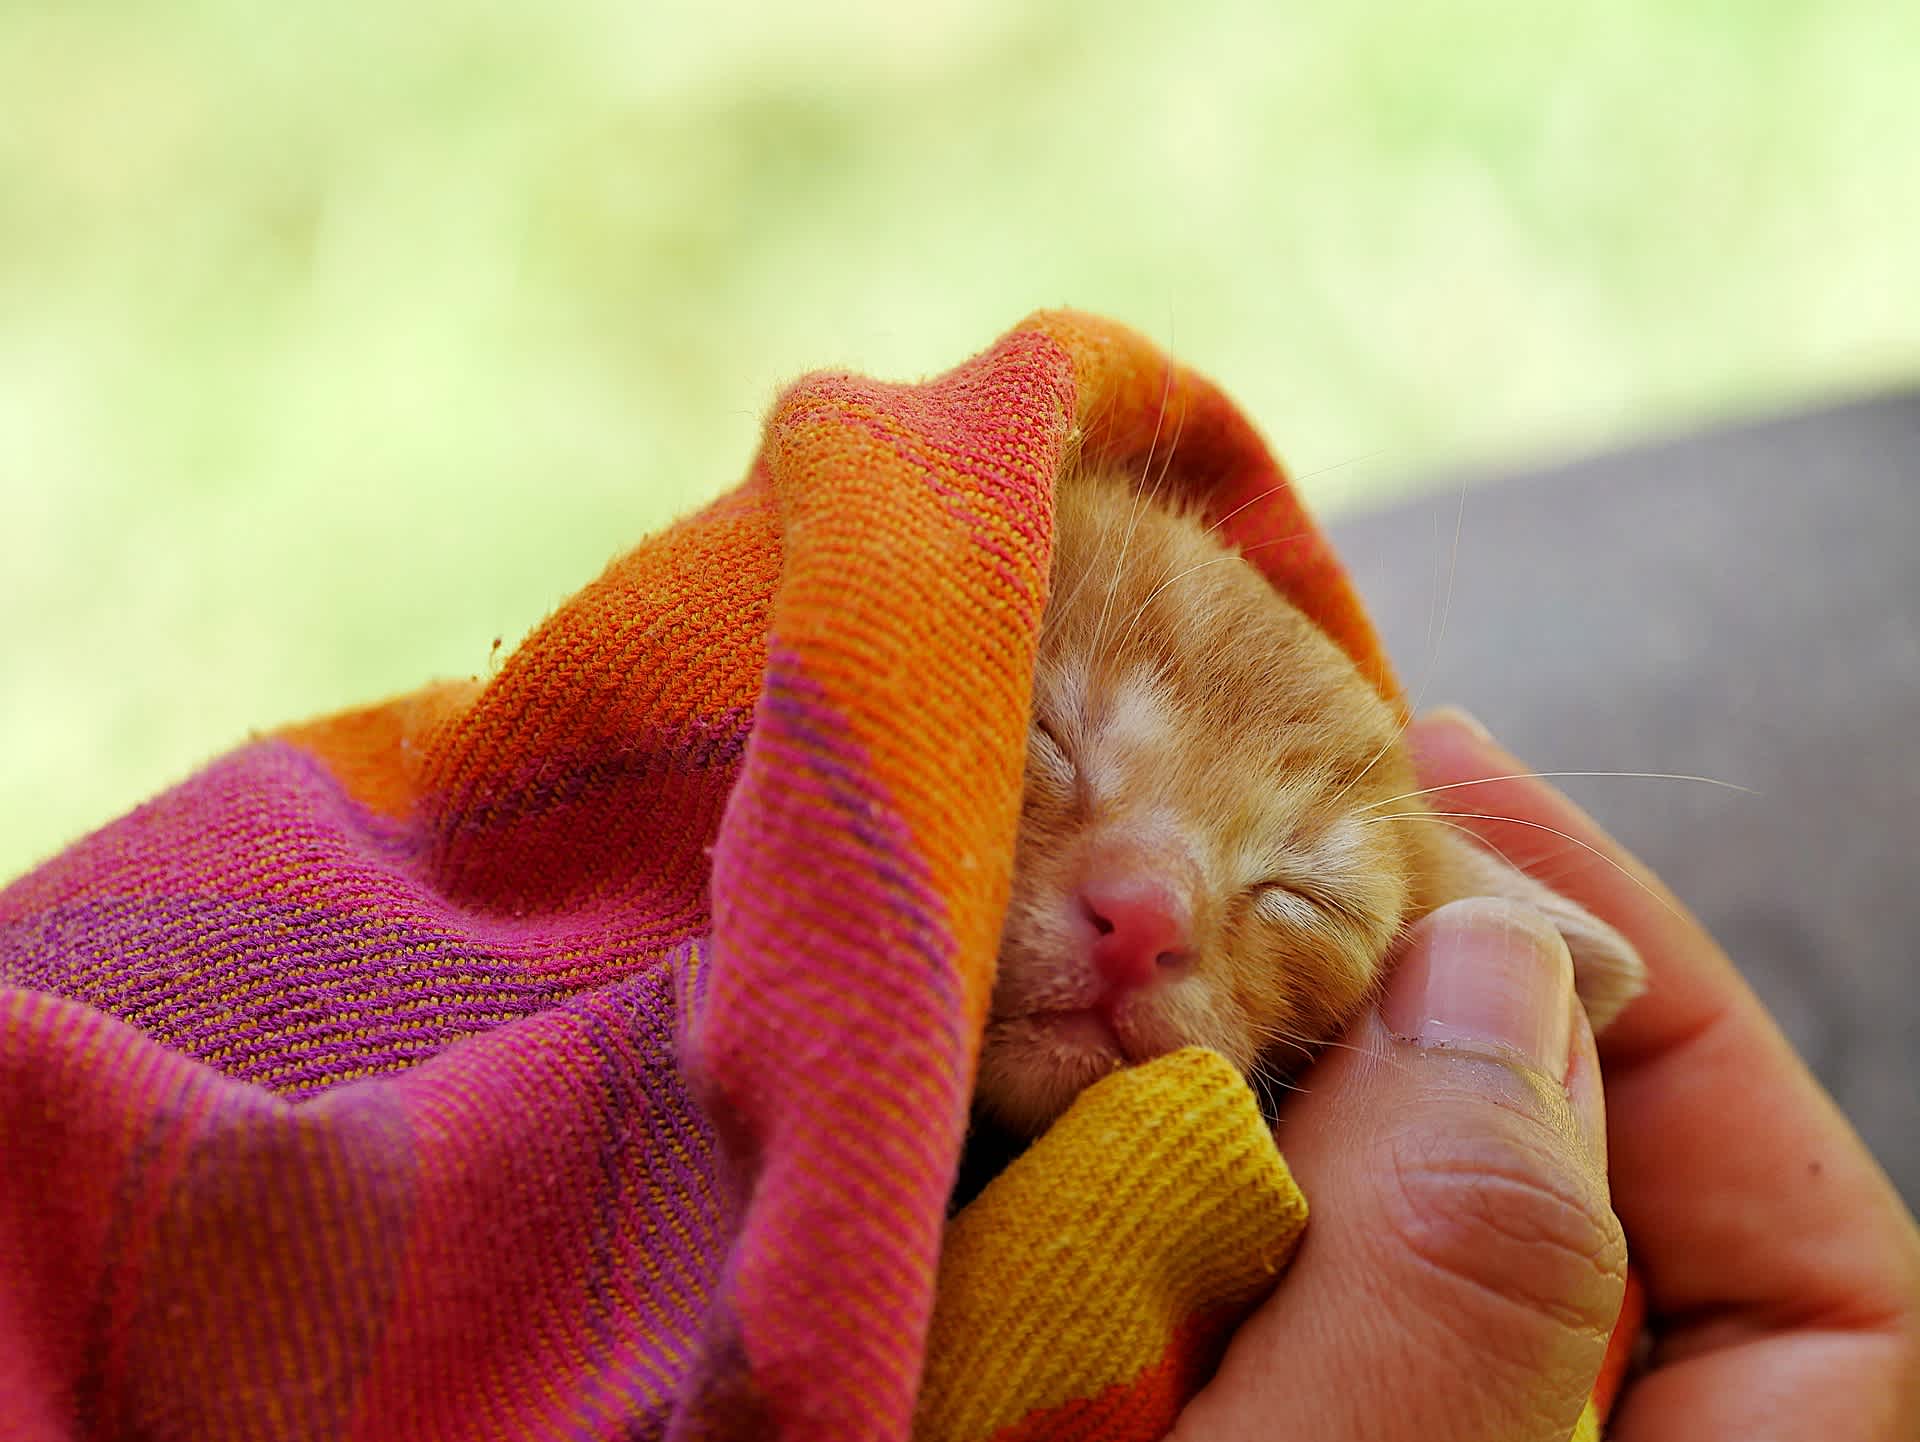 毛布にくるまれて眠る子猫